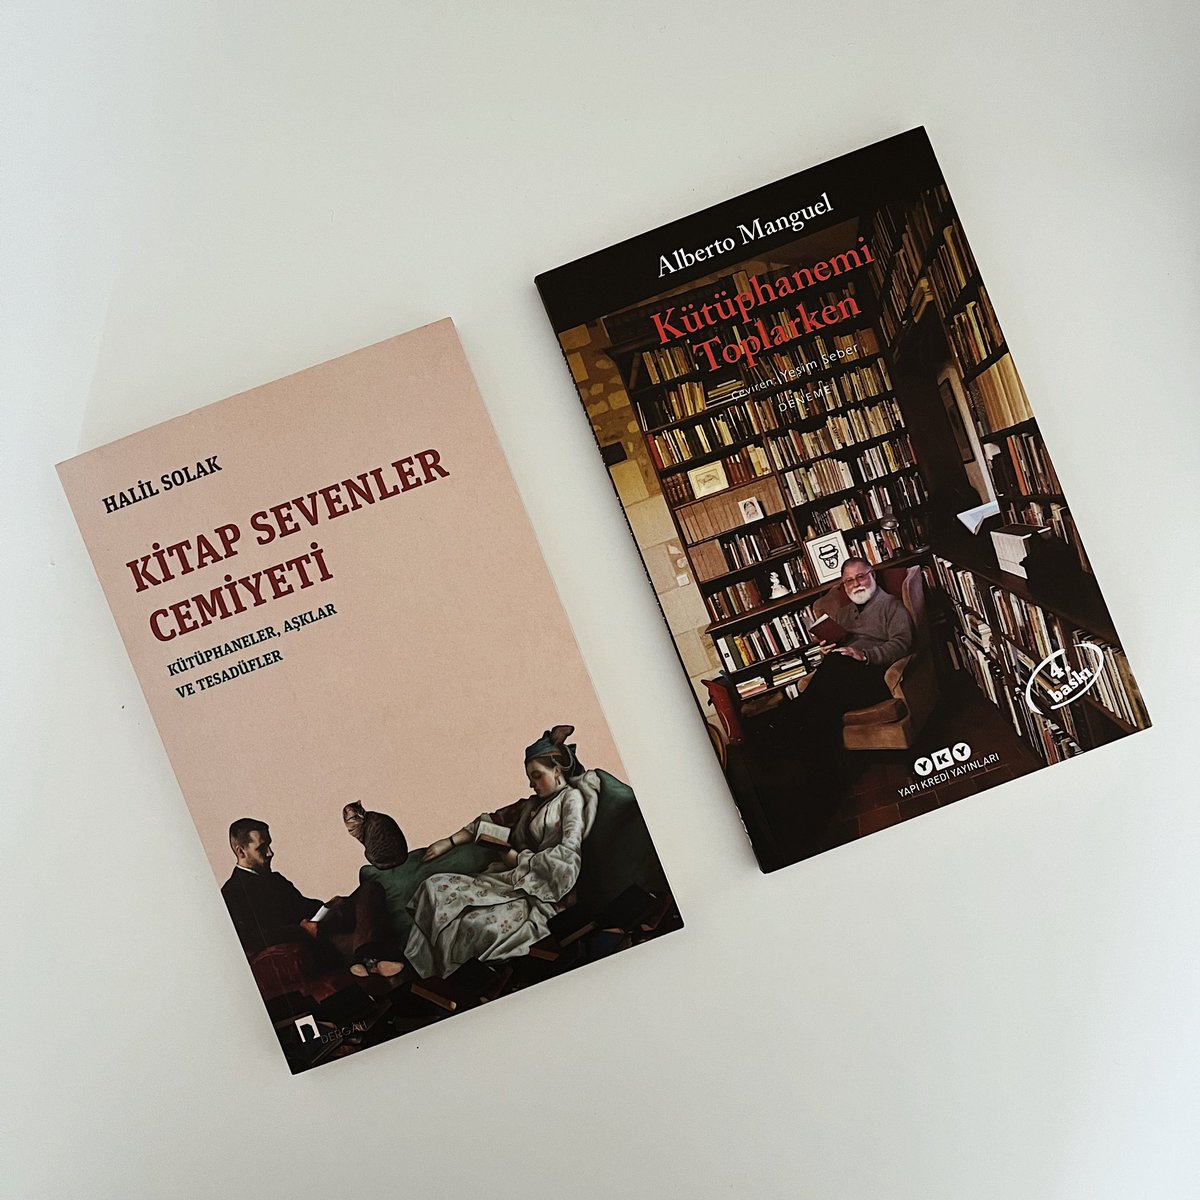 “Çoğu aşklar gibi kütüphanelere duyulan aşkın da öğrenilmesi gerekir.” (Alberto Manguel) Bu hafta çalışma masamda bana kitaplar ve kütüphaneler üzerine bu iki güzel eser eşlik edecek🌱